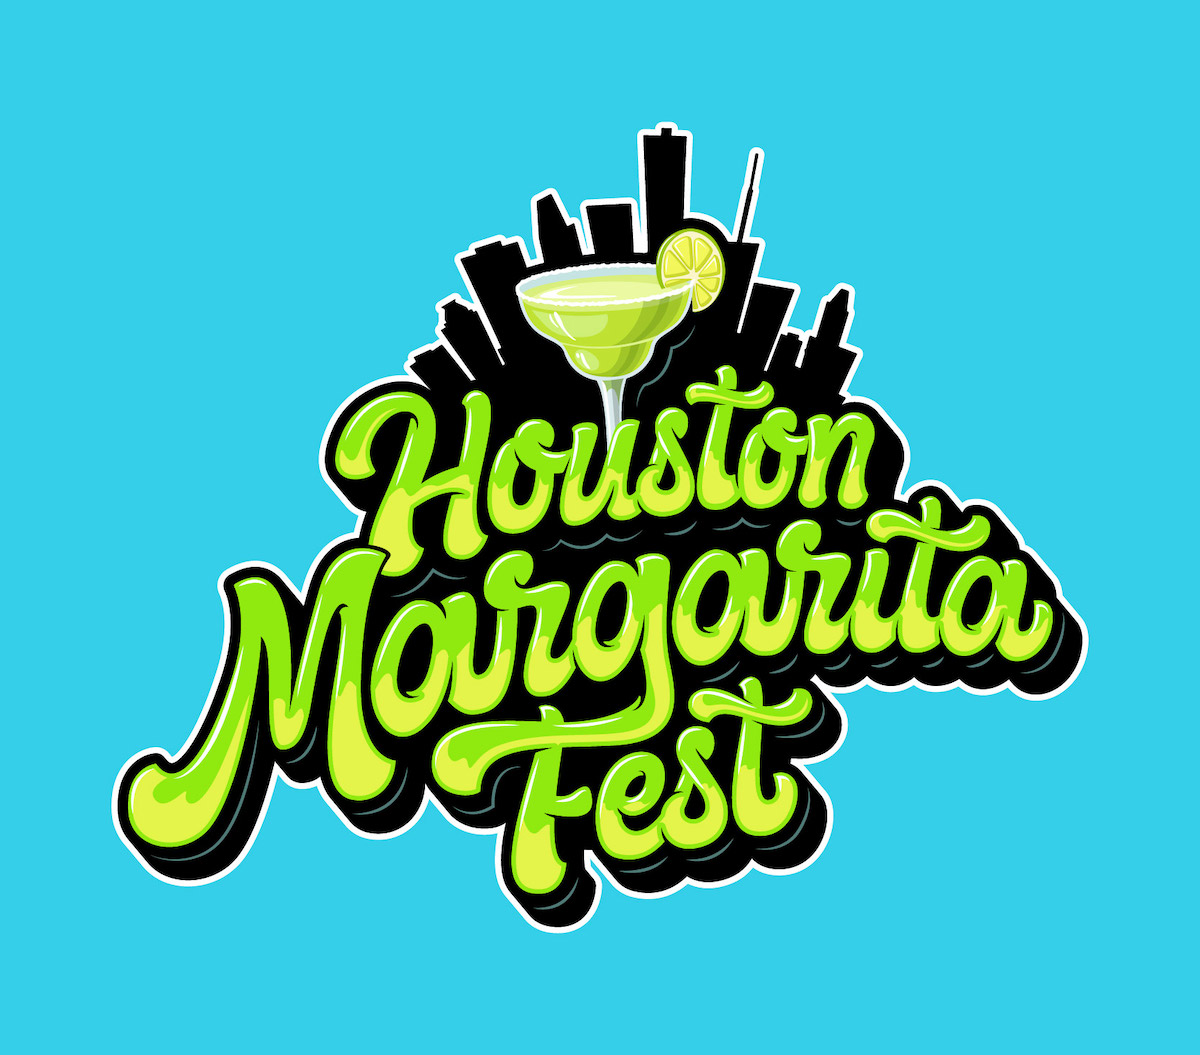 Houston Margarita Fest 2022 365 Things to Do in Houston